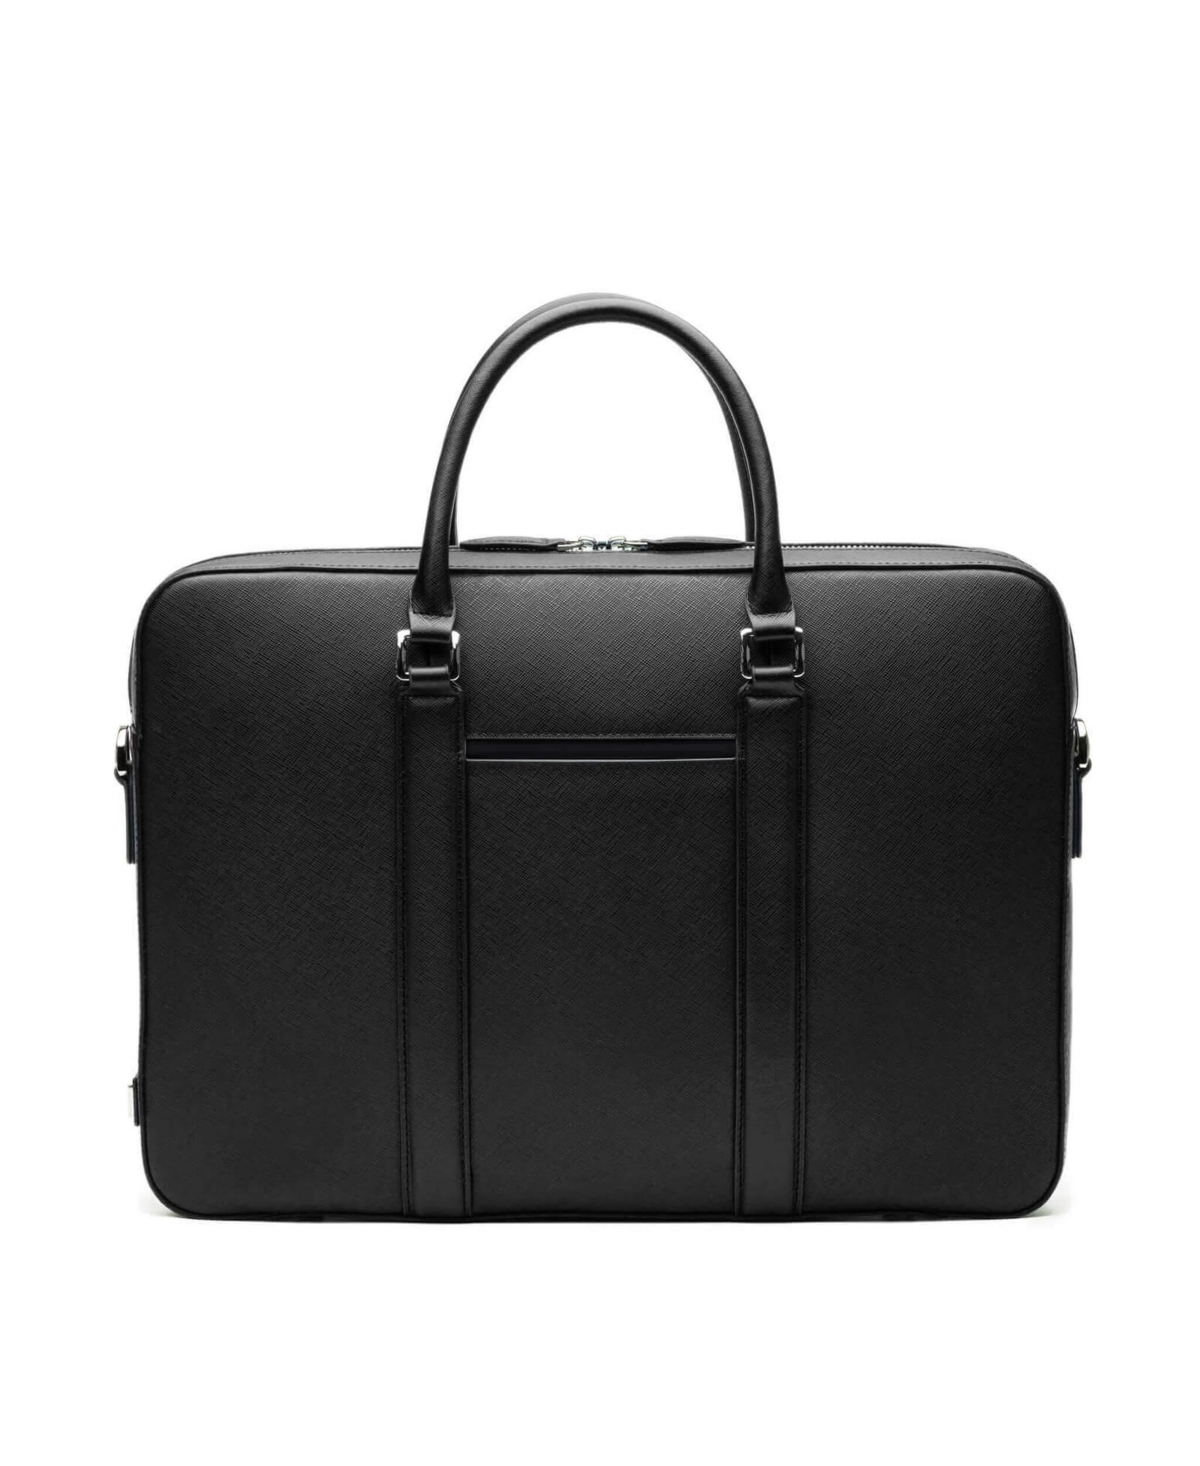 Men's Manhattan Monochrome Leather Briefcase - Black